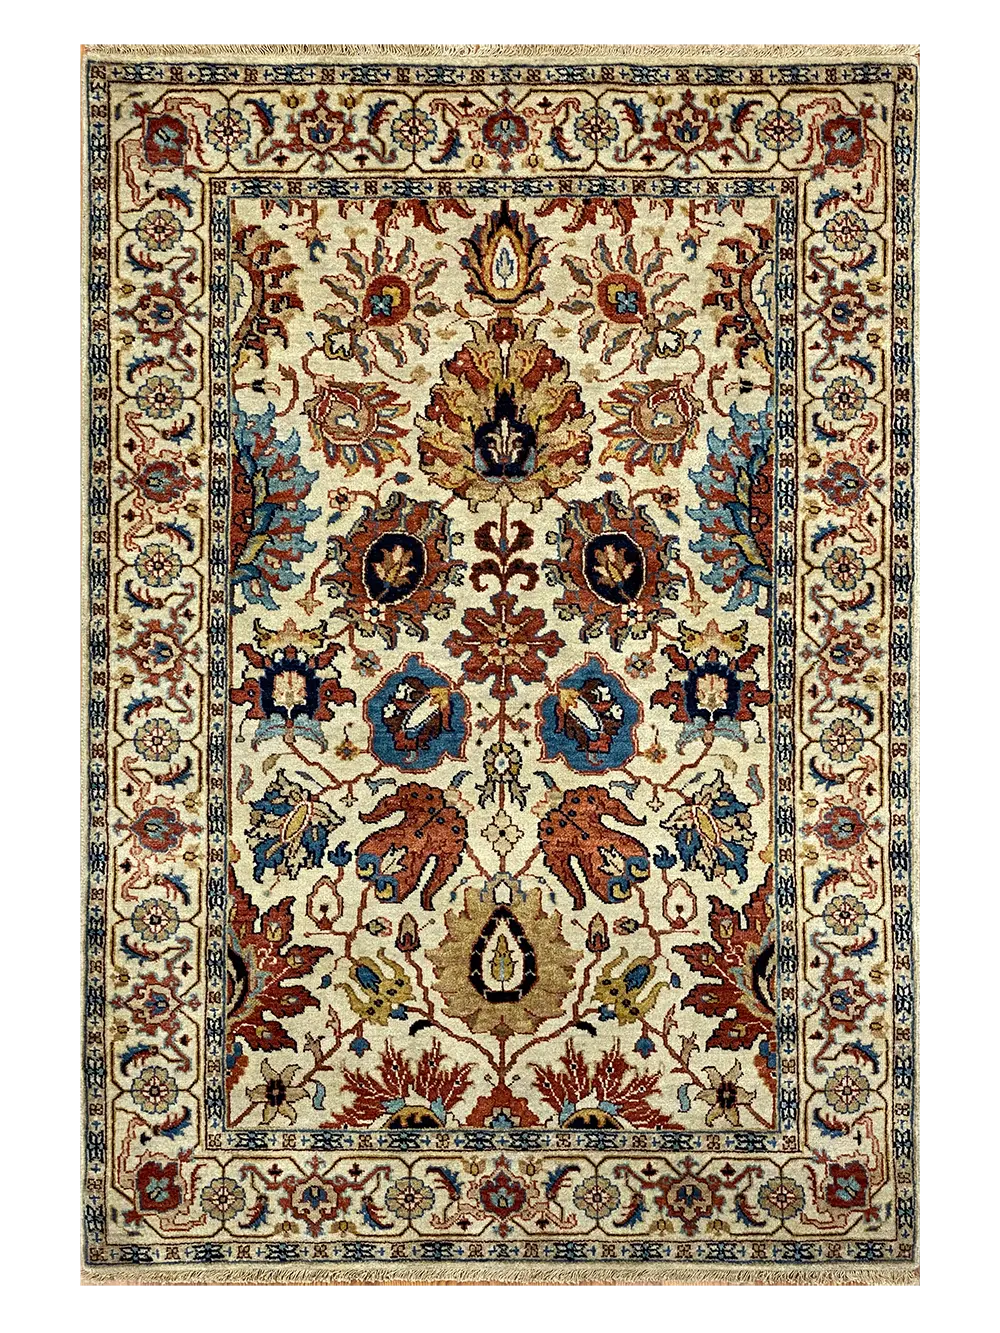 Polonia 4' x 5' 10" Handmade Area rug